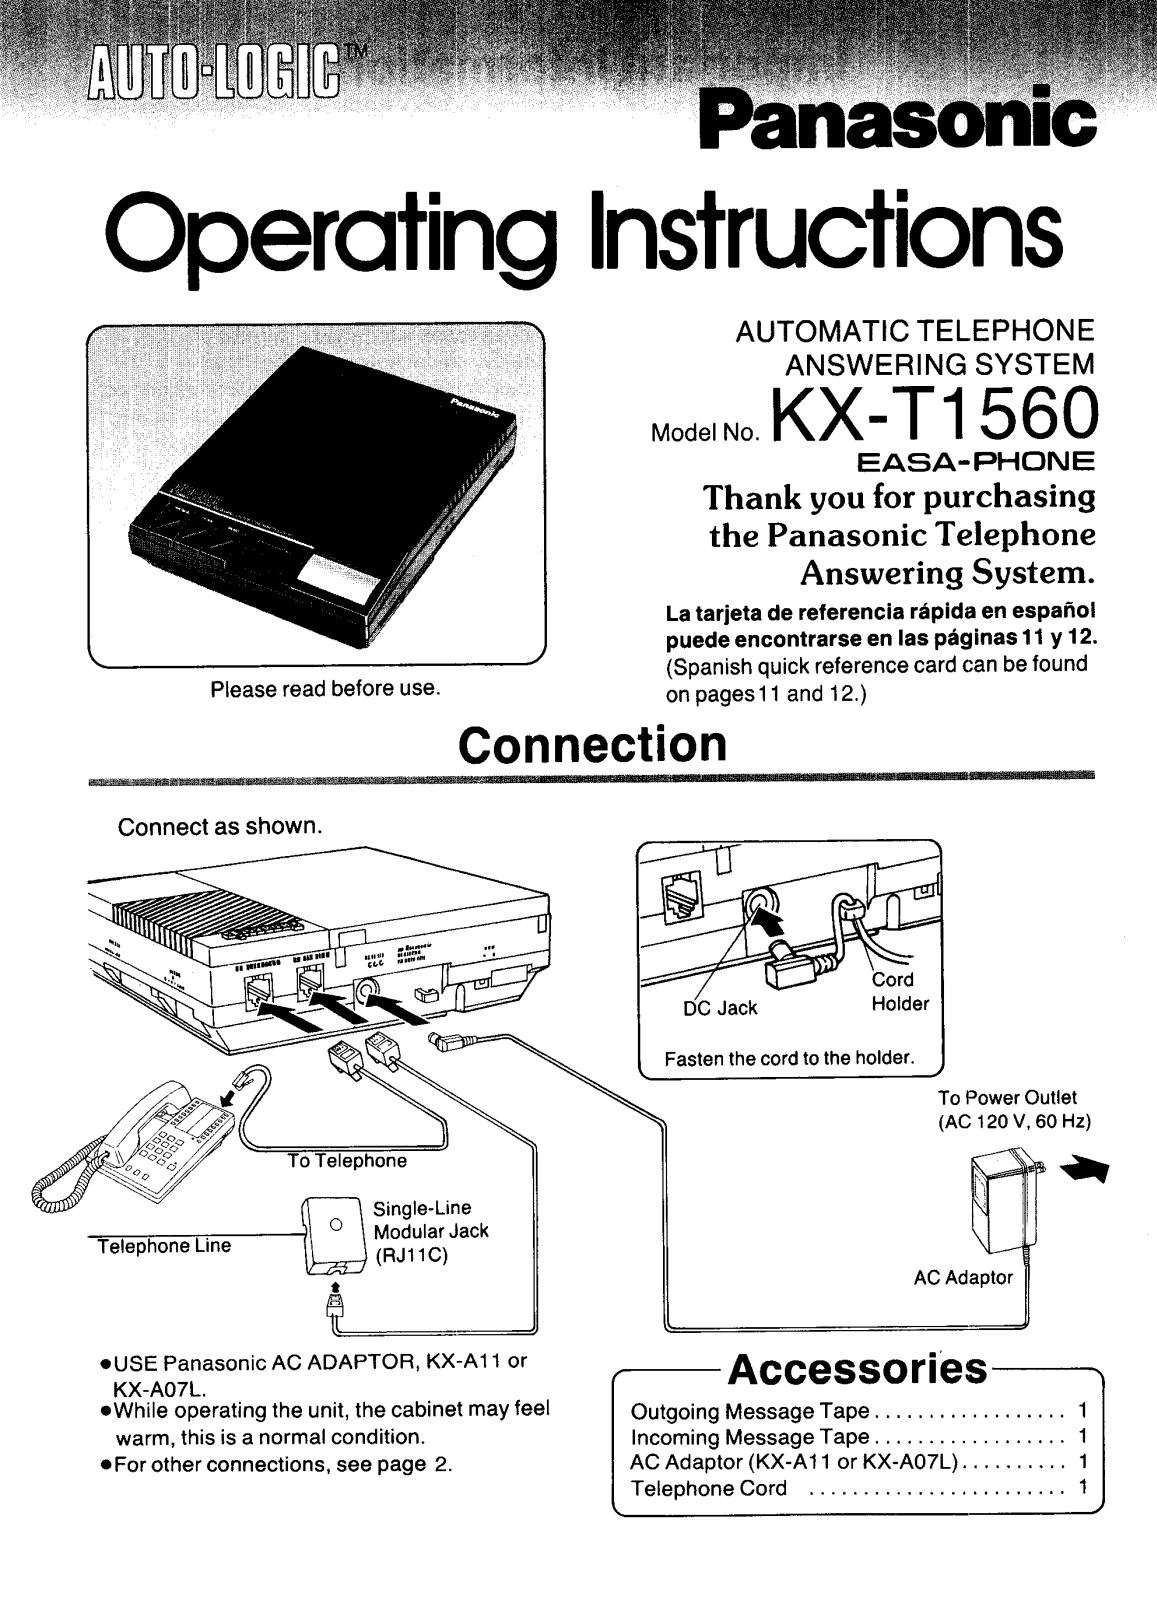 Panasonic kx-t1560 Operation Manual